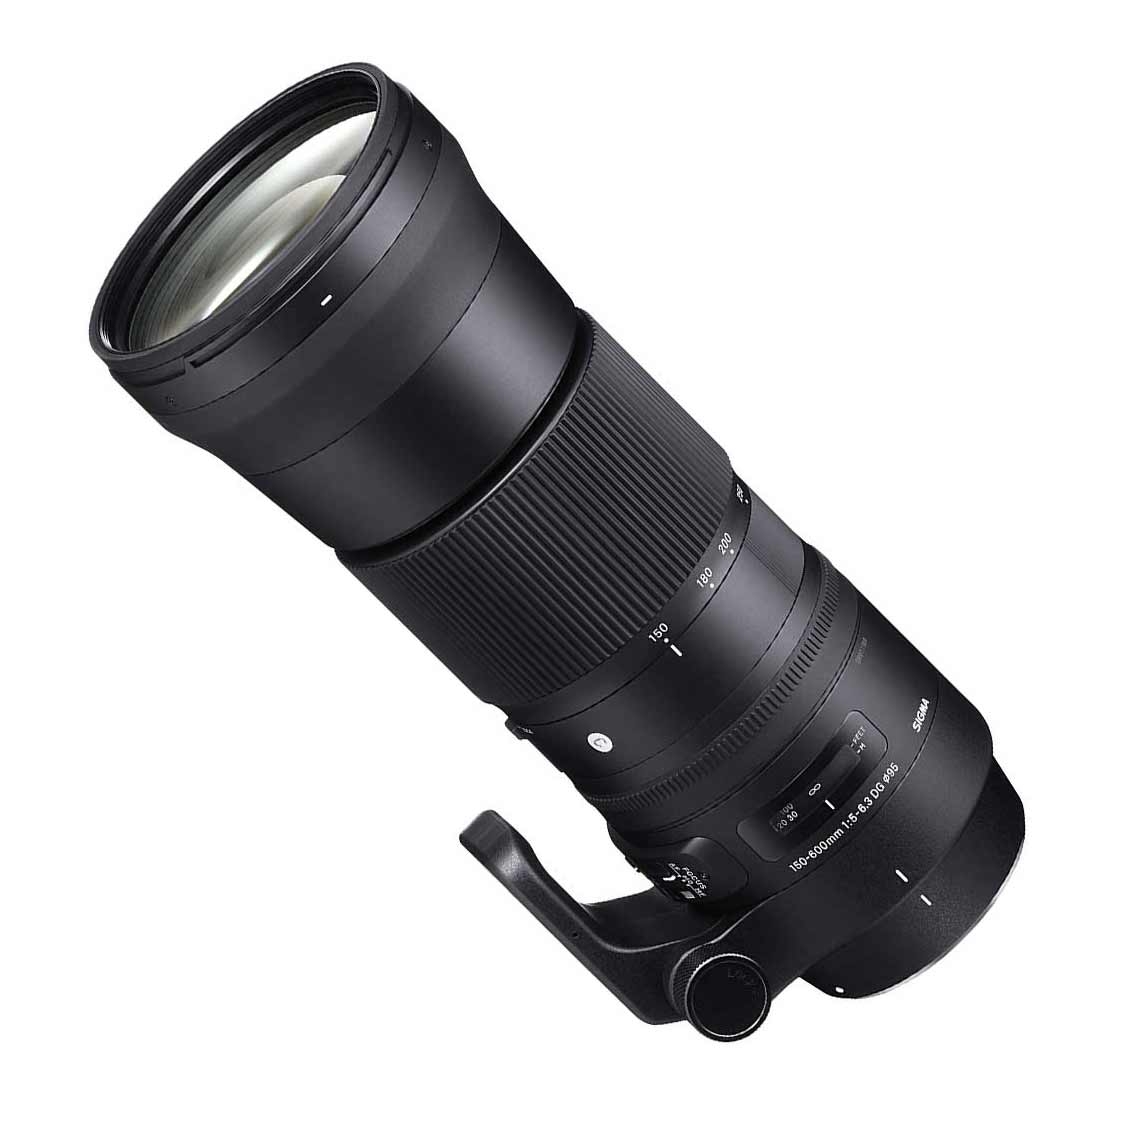 Sigma AF 150-600mm DG OS HSM Contemporary Lens for Canon EF Mount